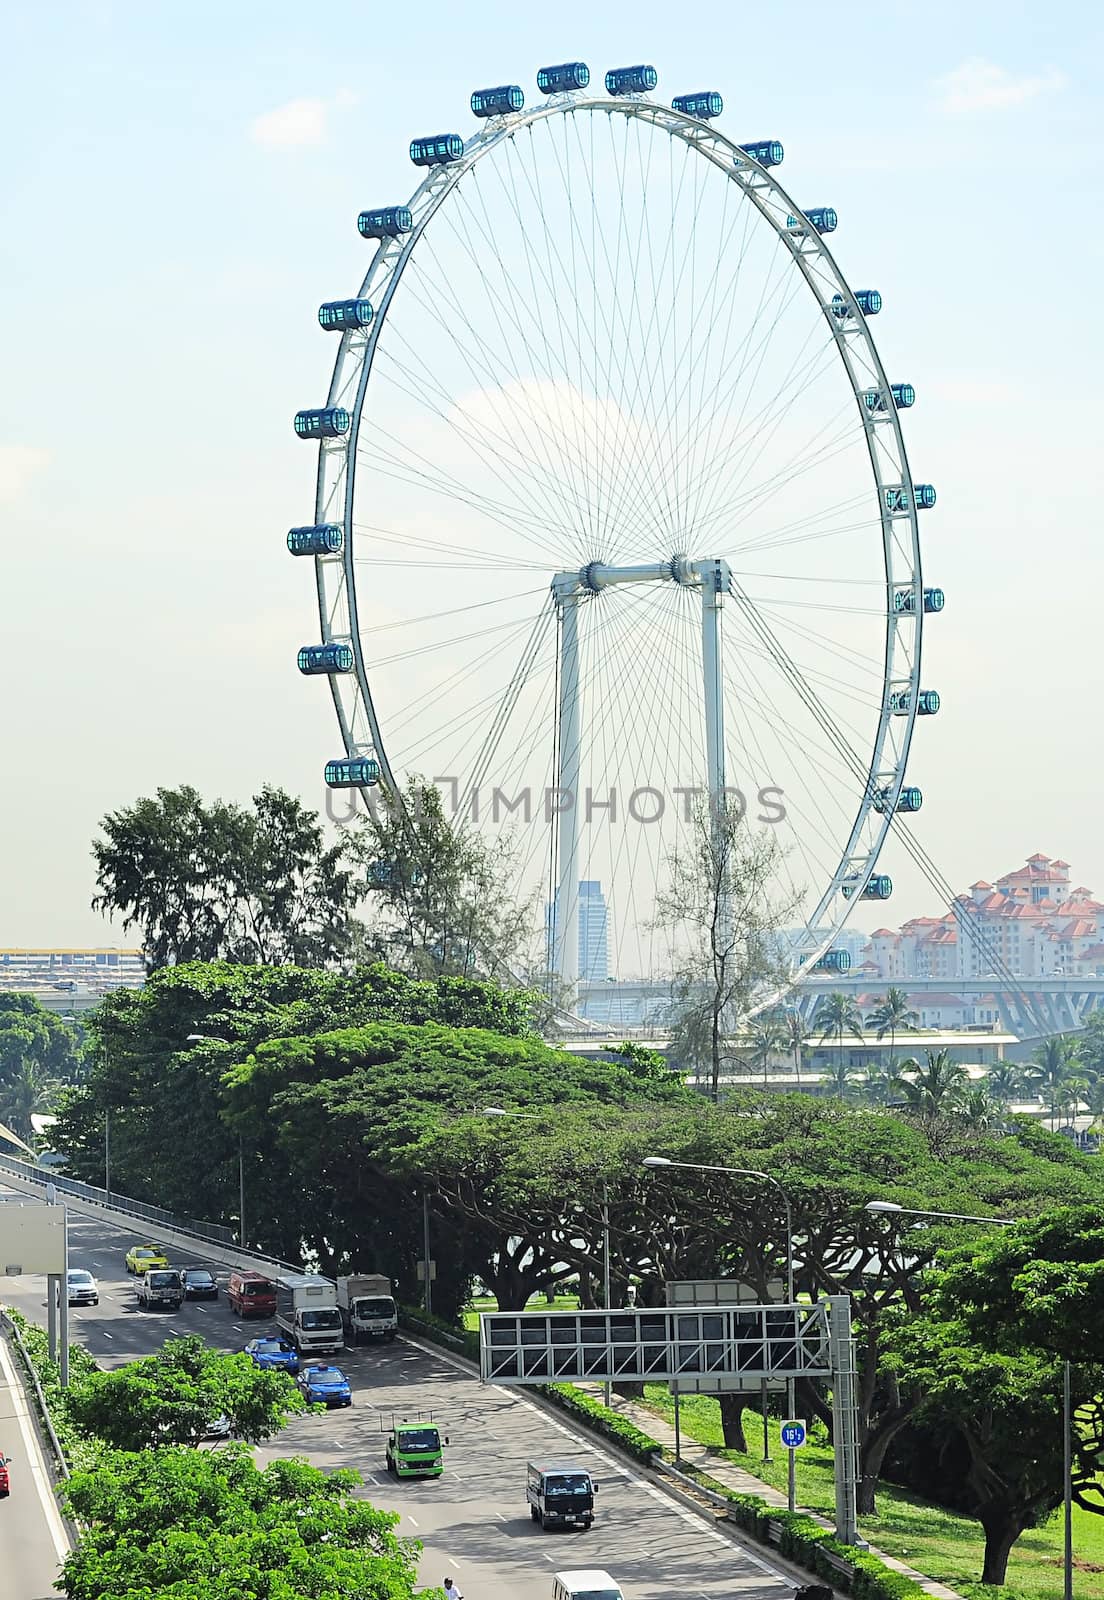 Singapore Rerries Wheel by joyfull